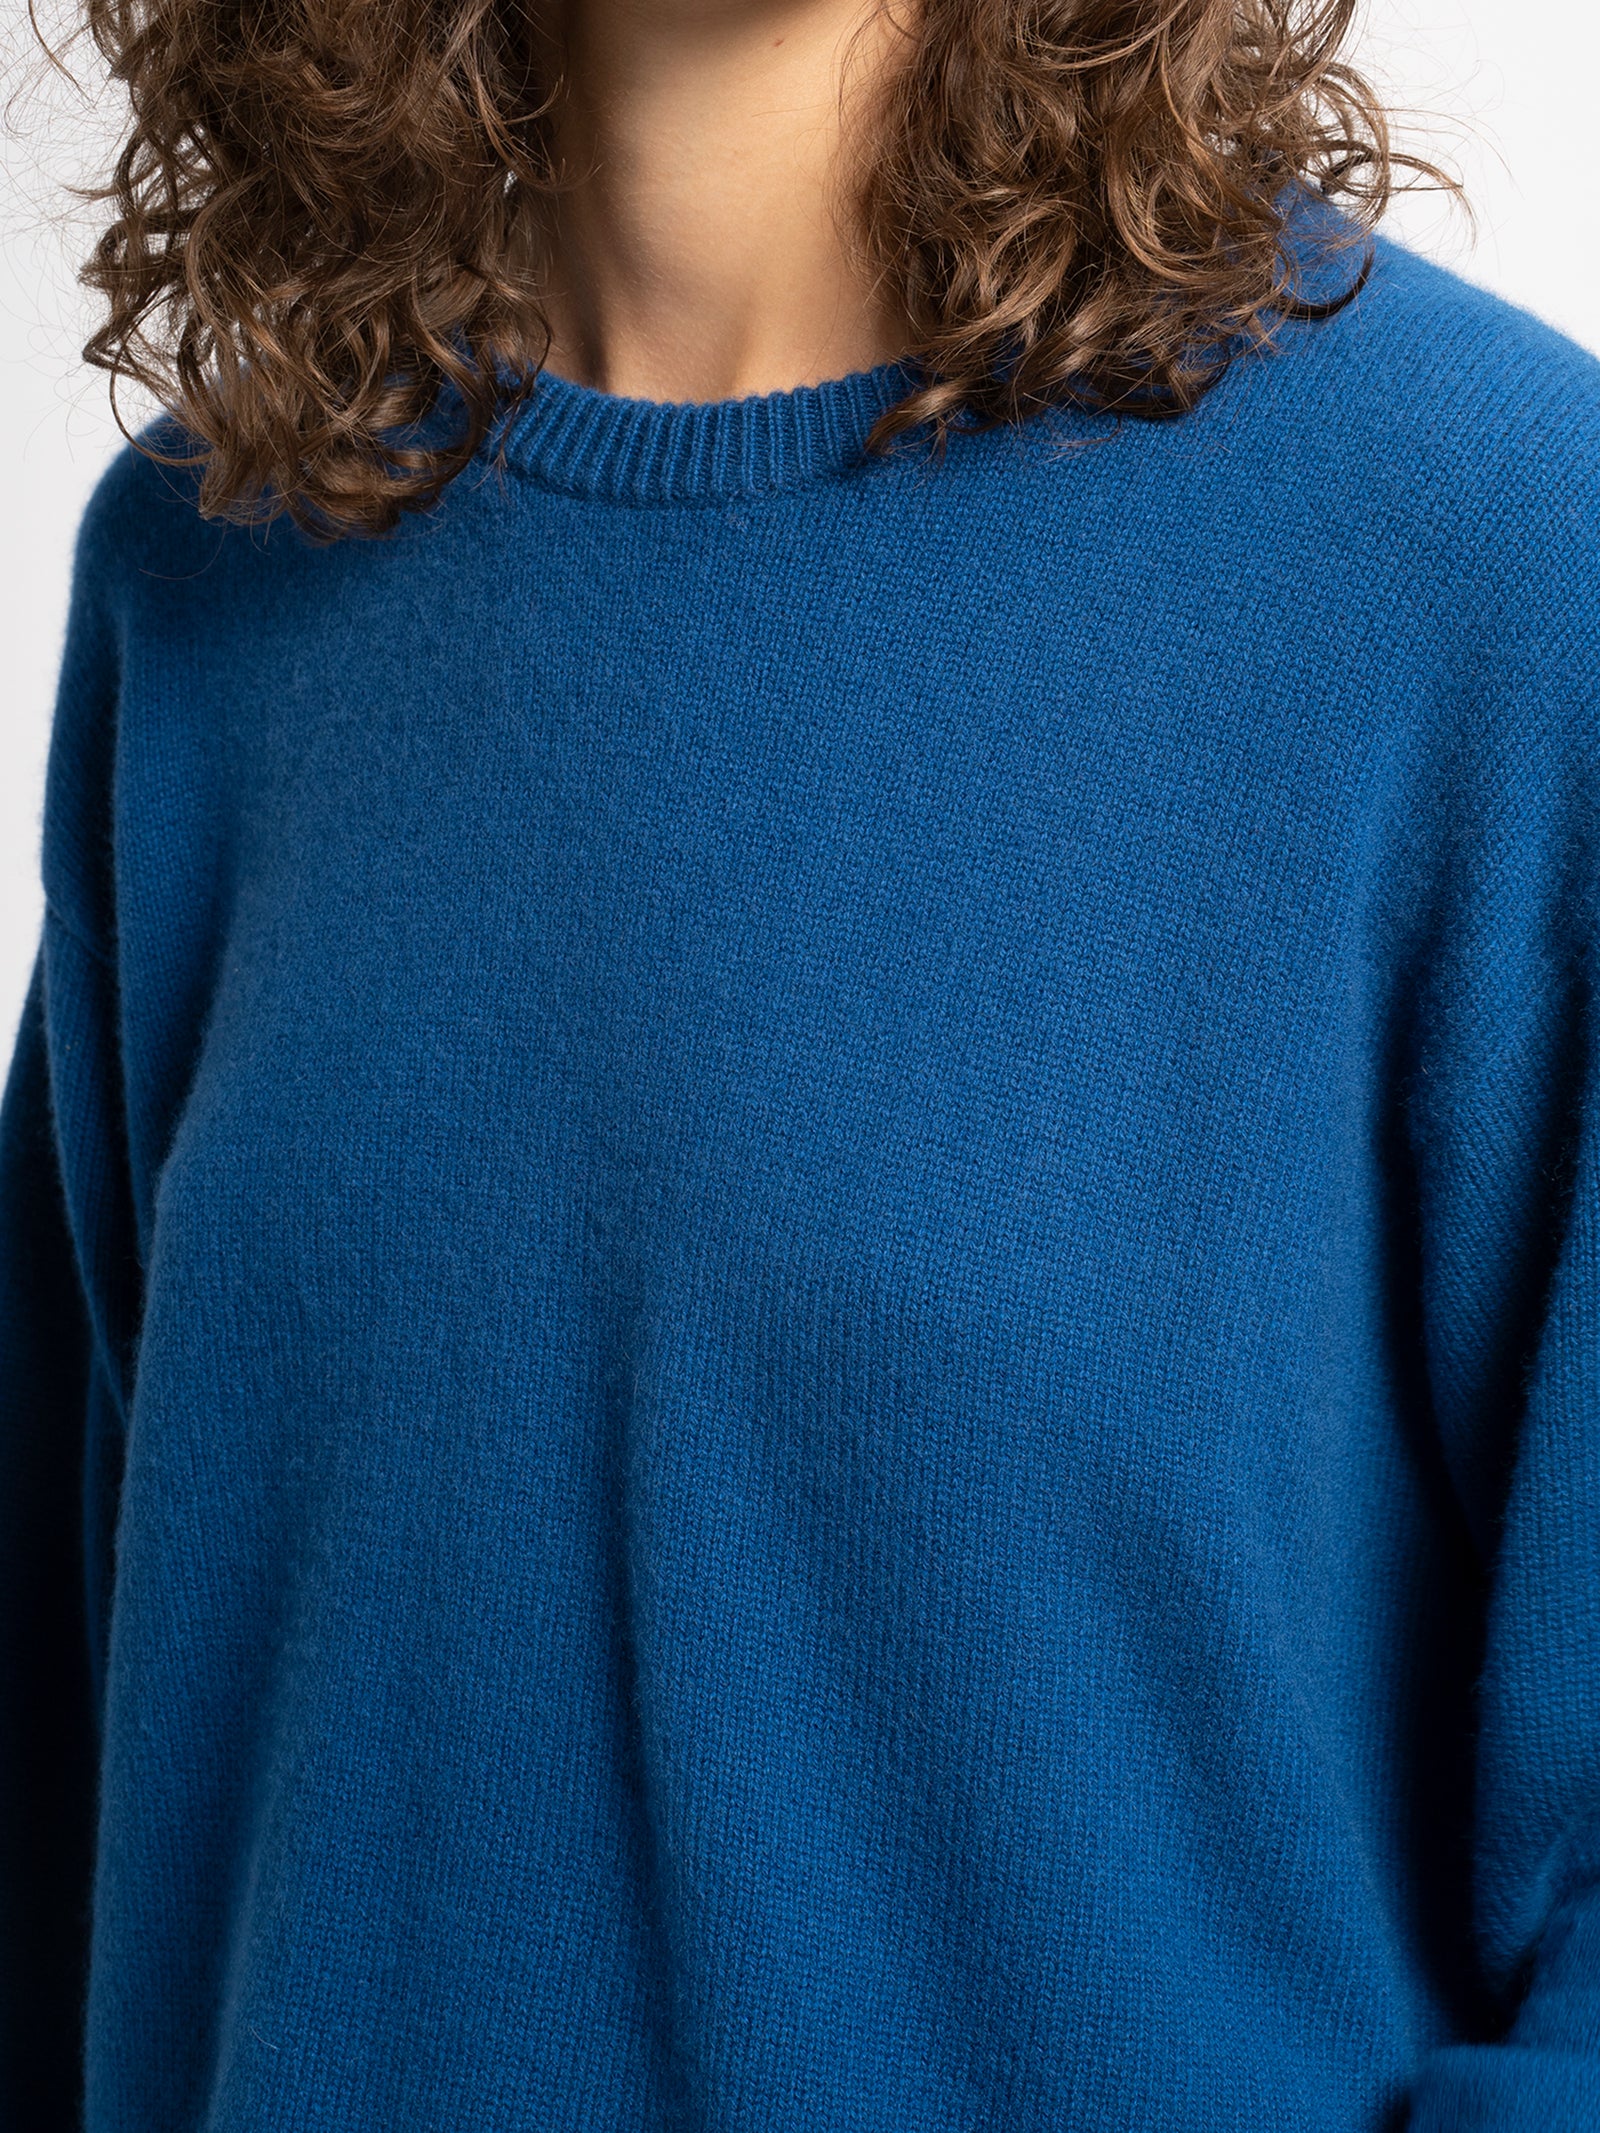 Pardis Cashmere Sweater